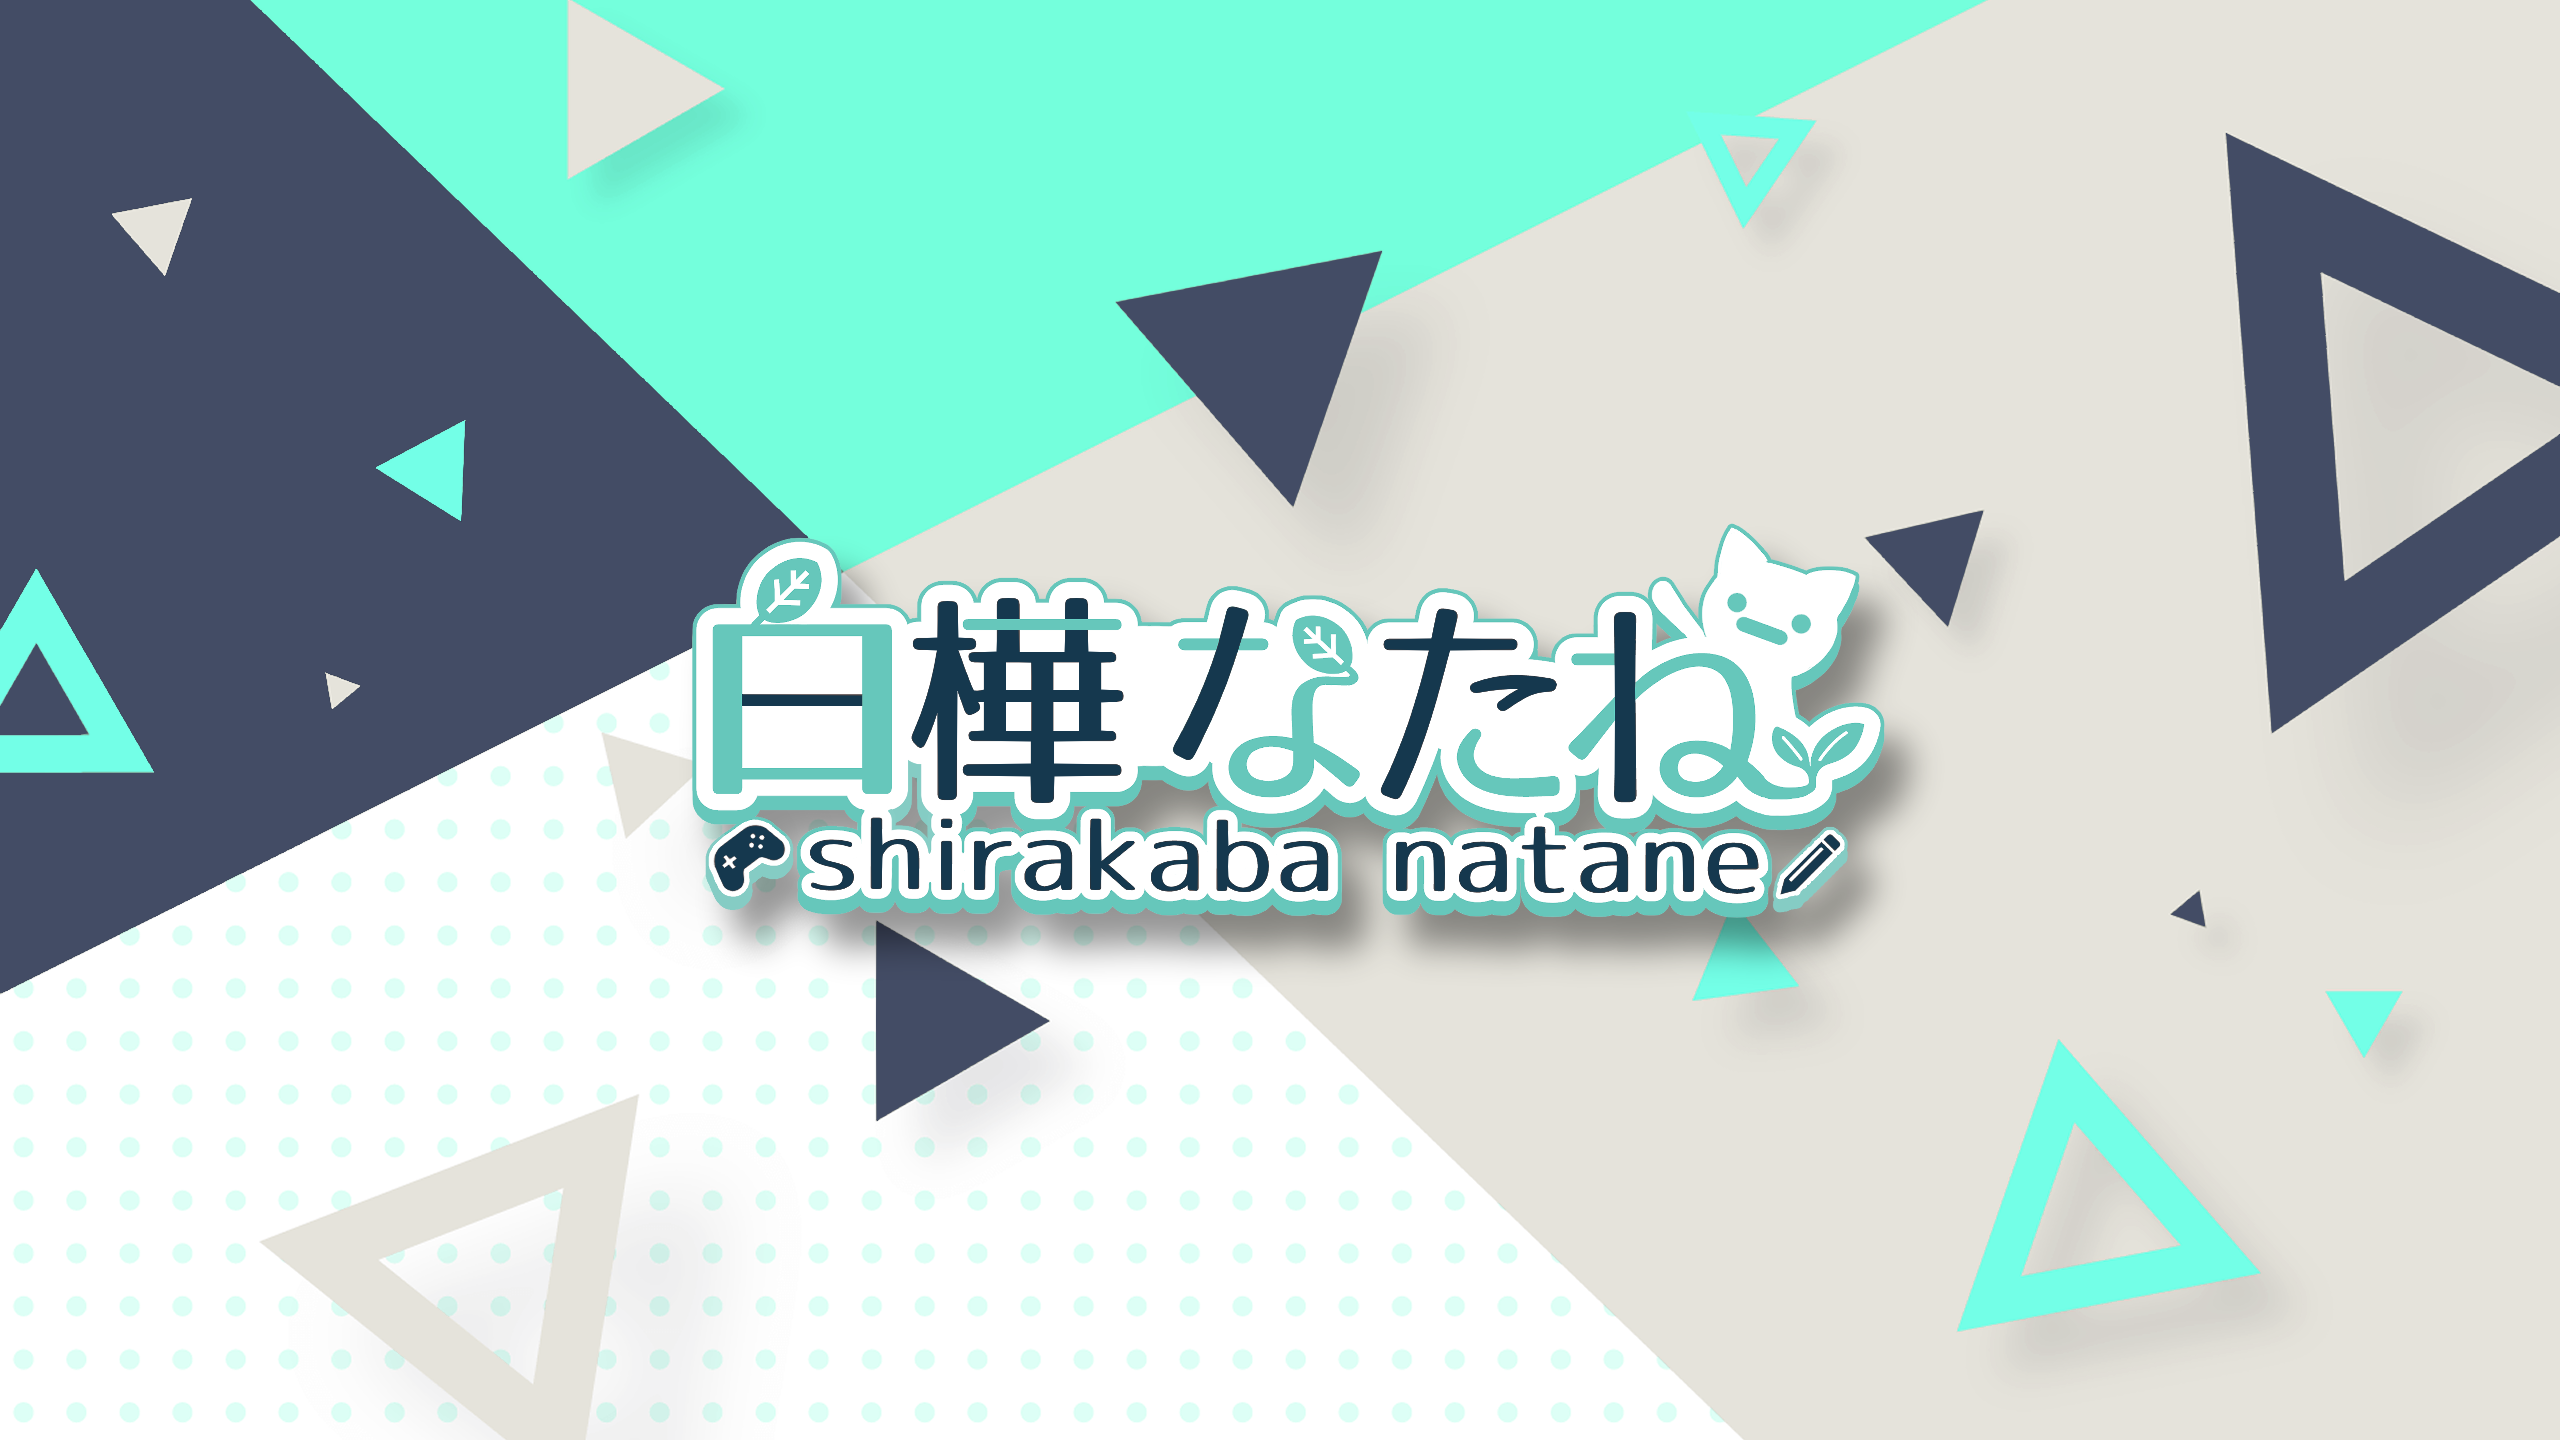 shirakabanatane